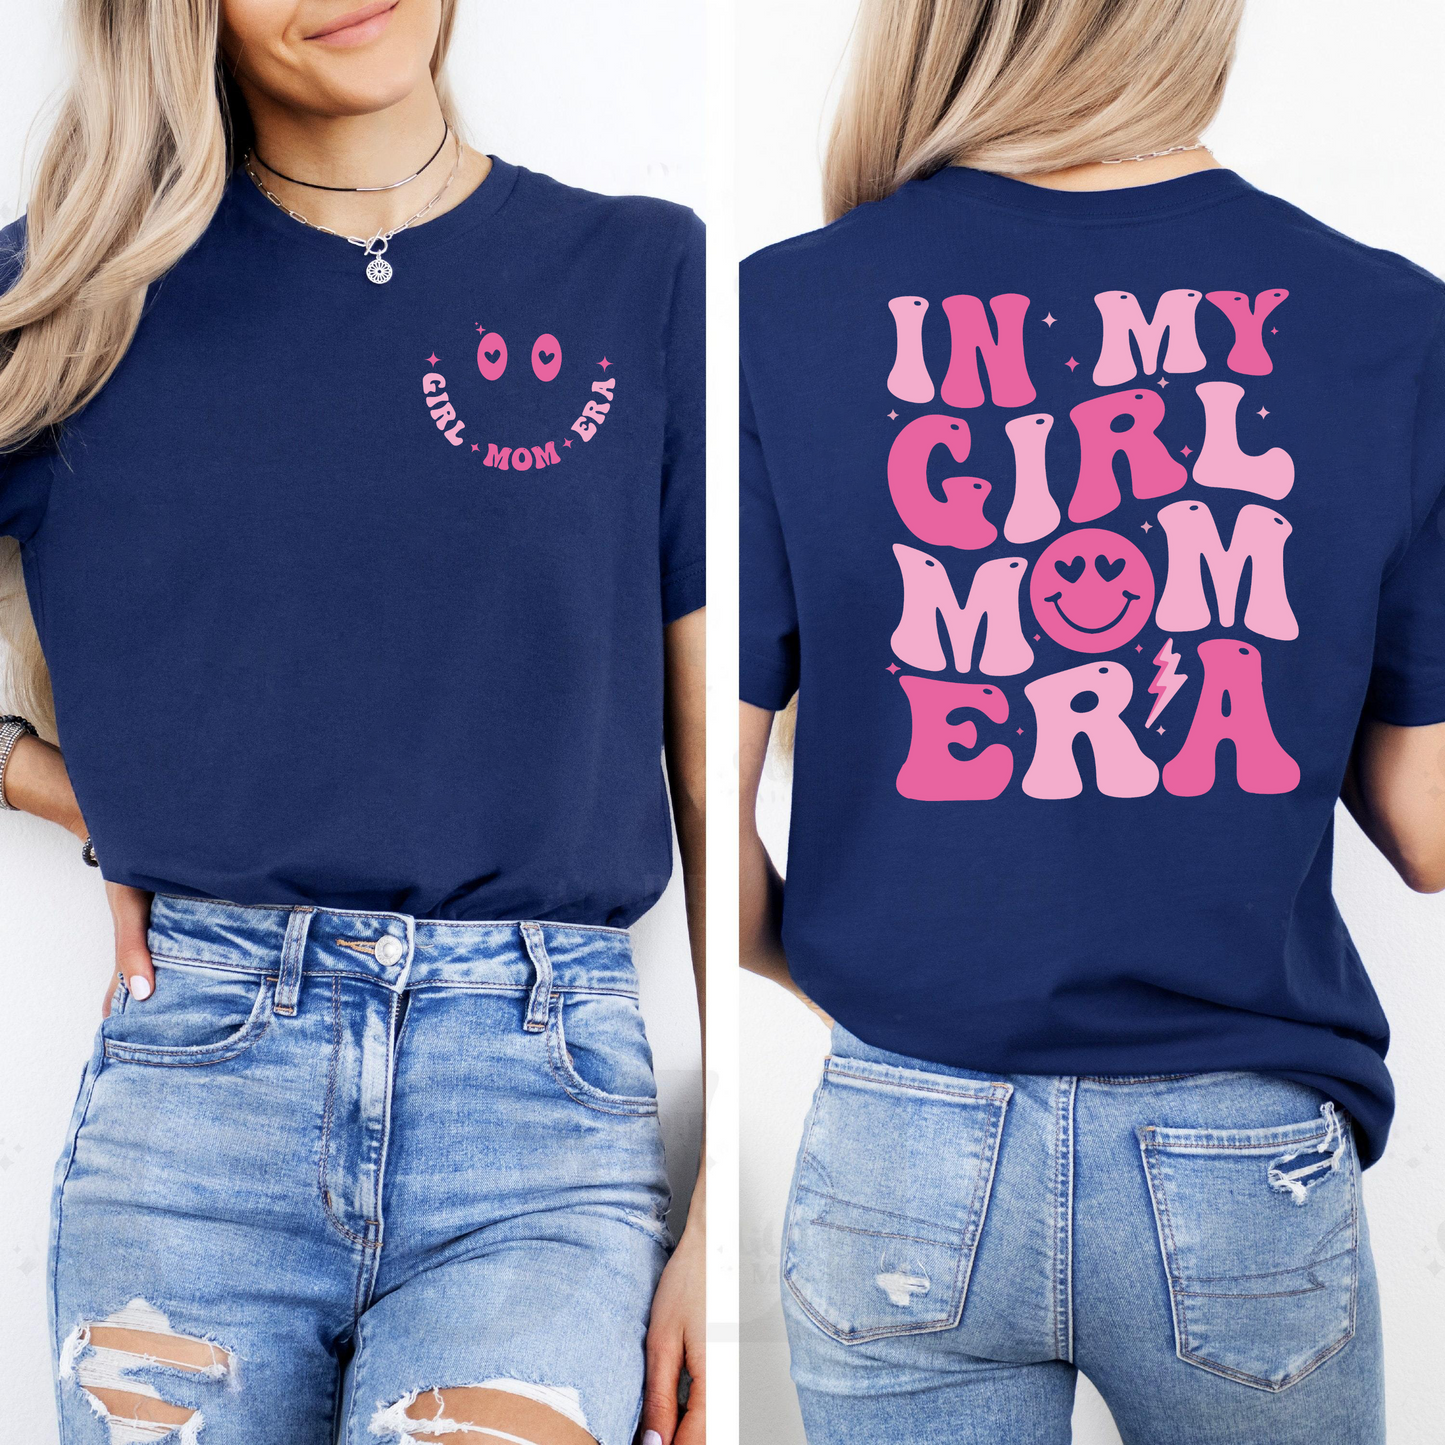 Girl Mom Era Celebration Shirt - Perfect Gift for Stylish Moms